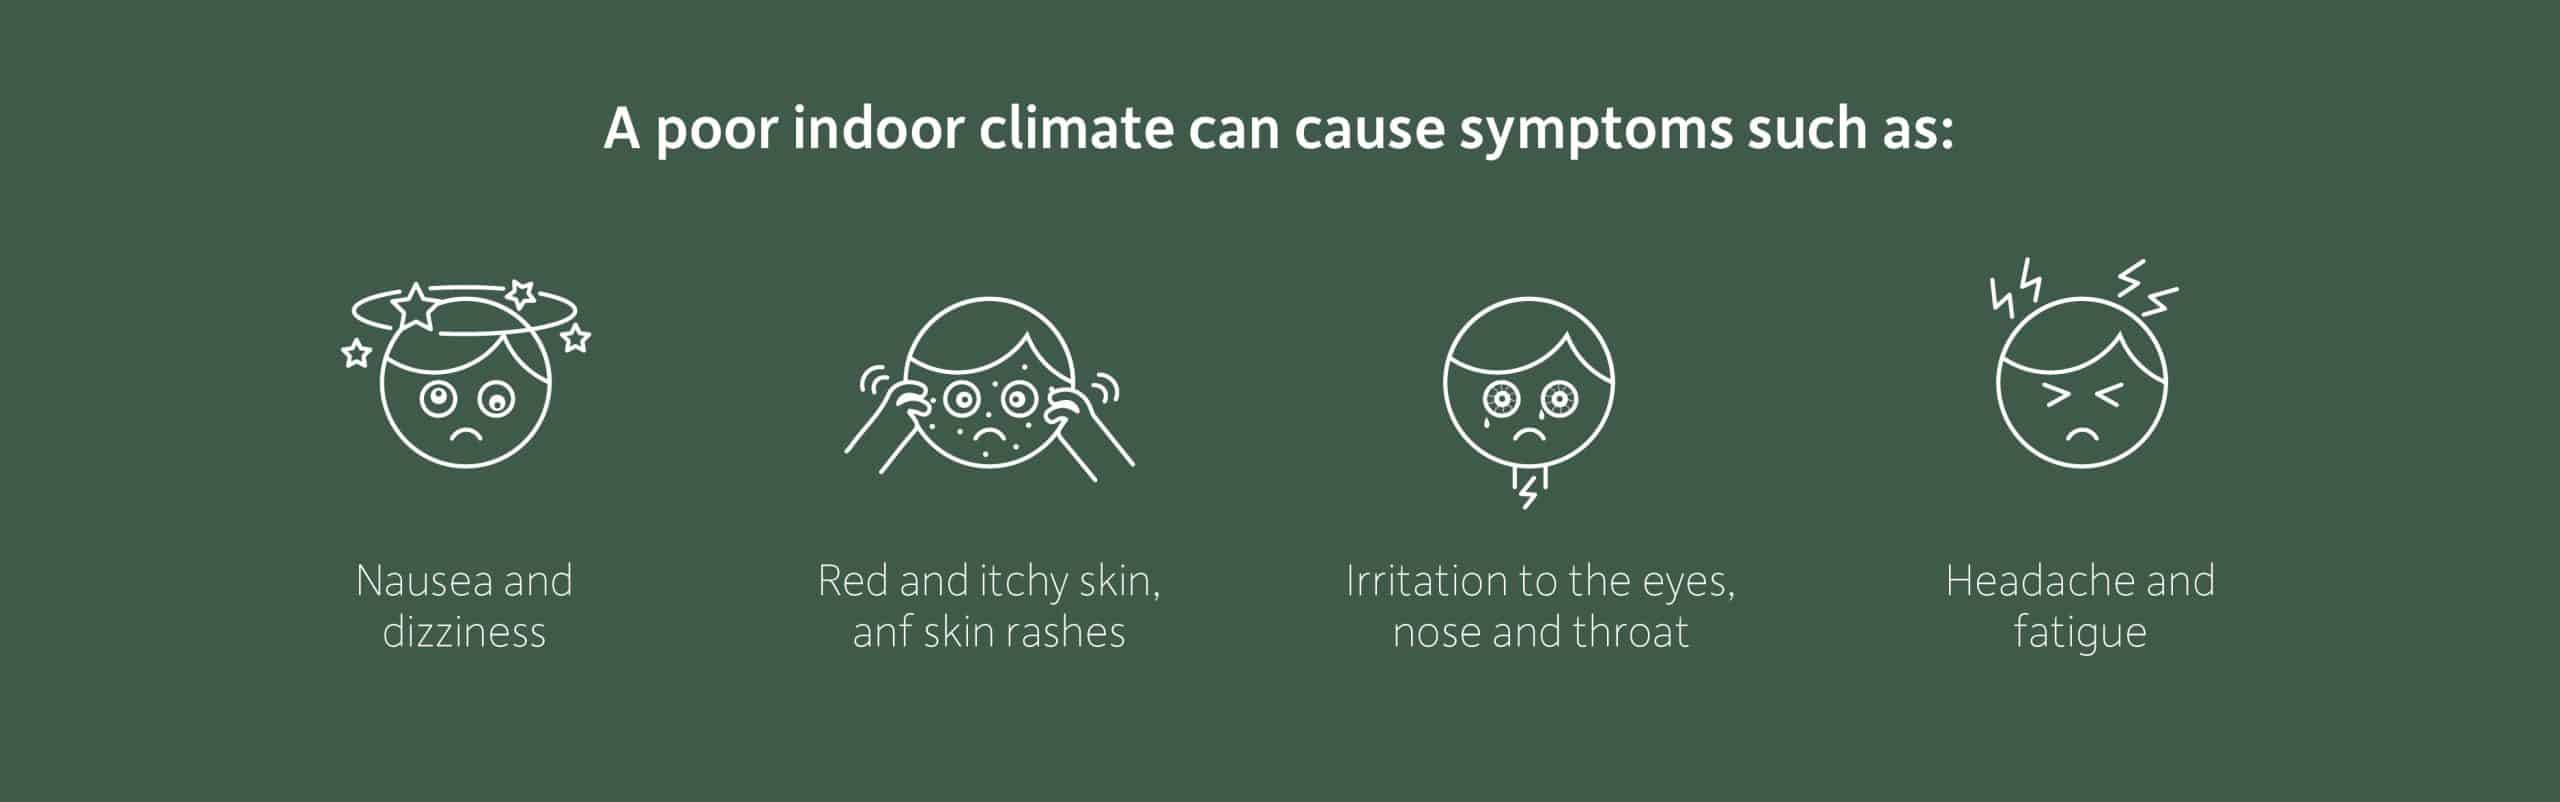 symptoms of poor indoor climate